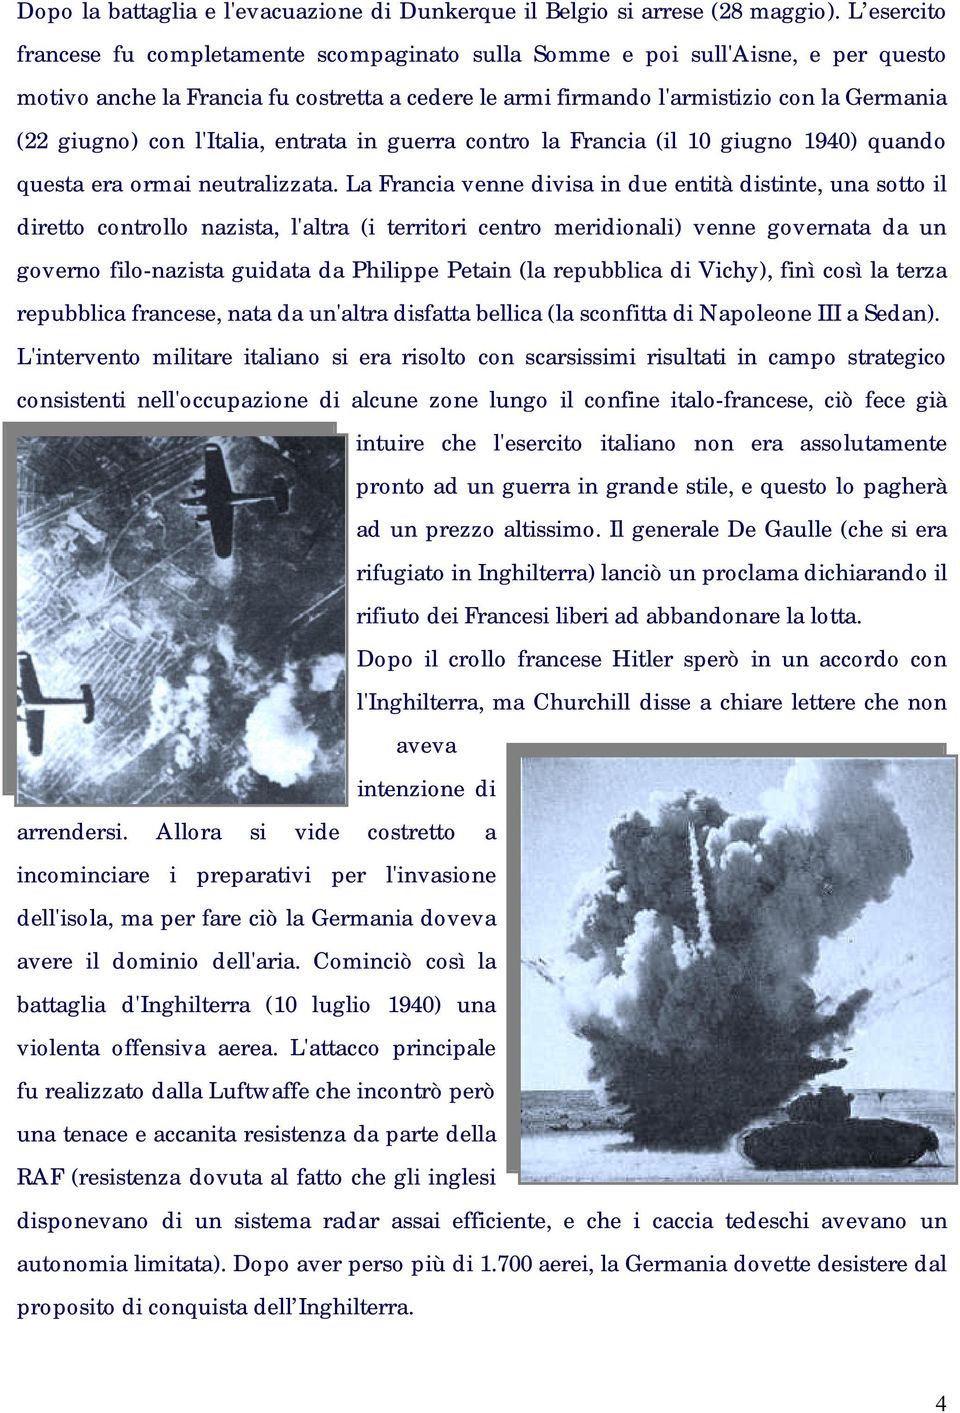 con l'italia, entrata in guerra contro la Francia (il 10 giugno 1940) quando questa era ormai neutralizzata.